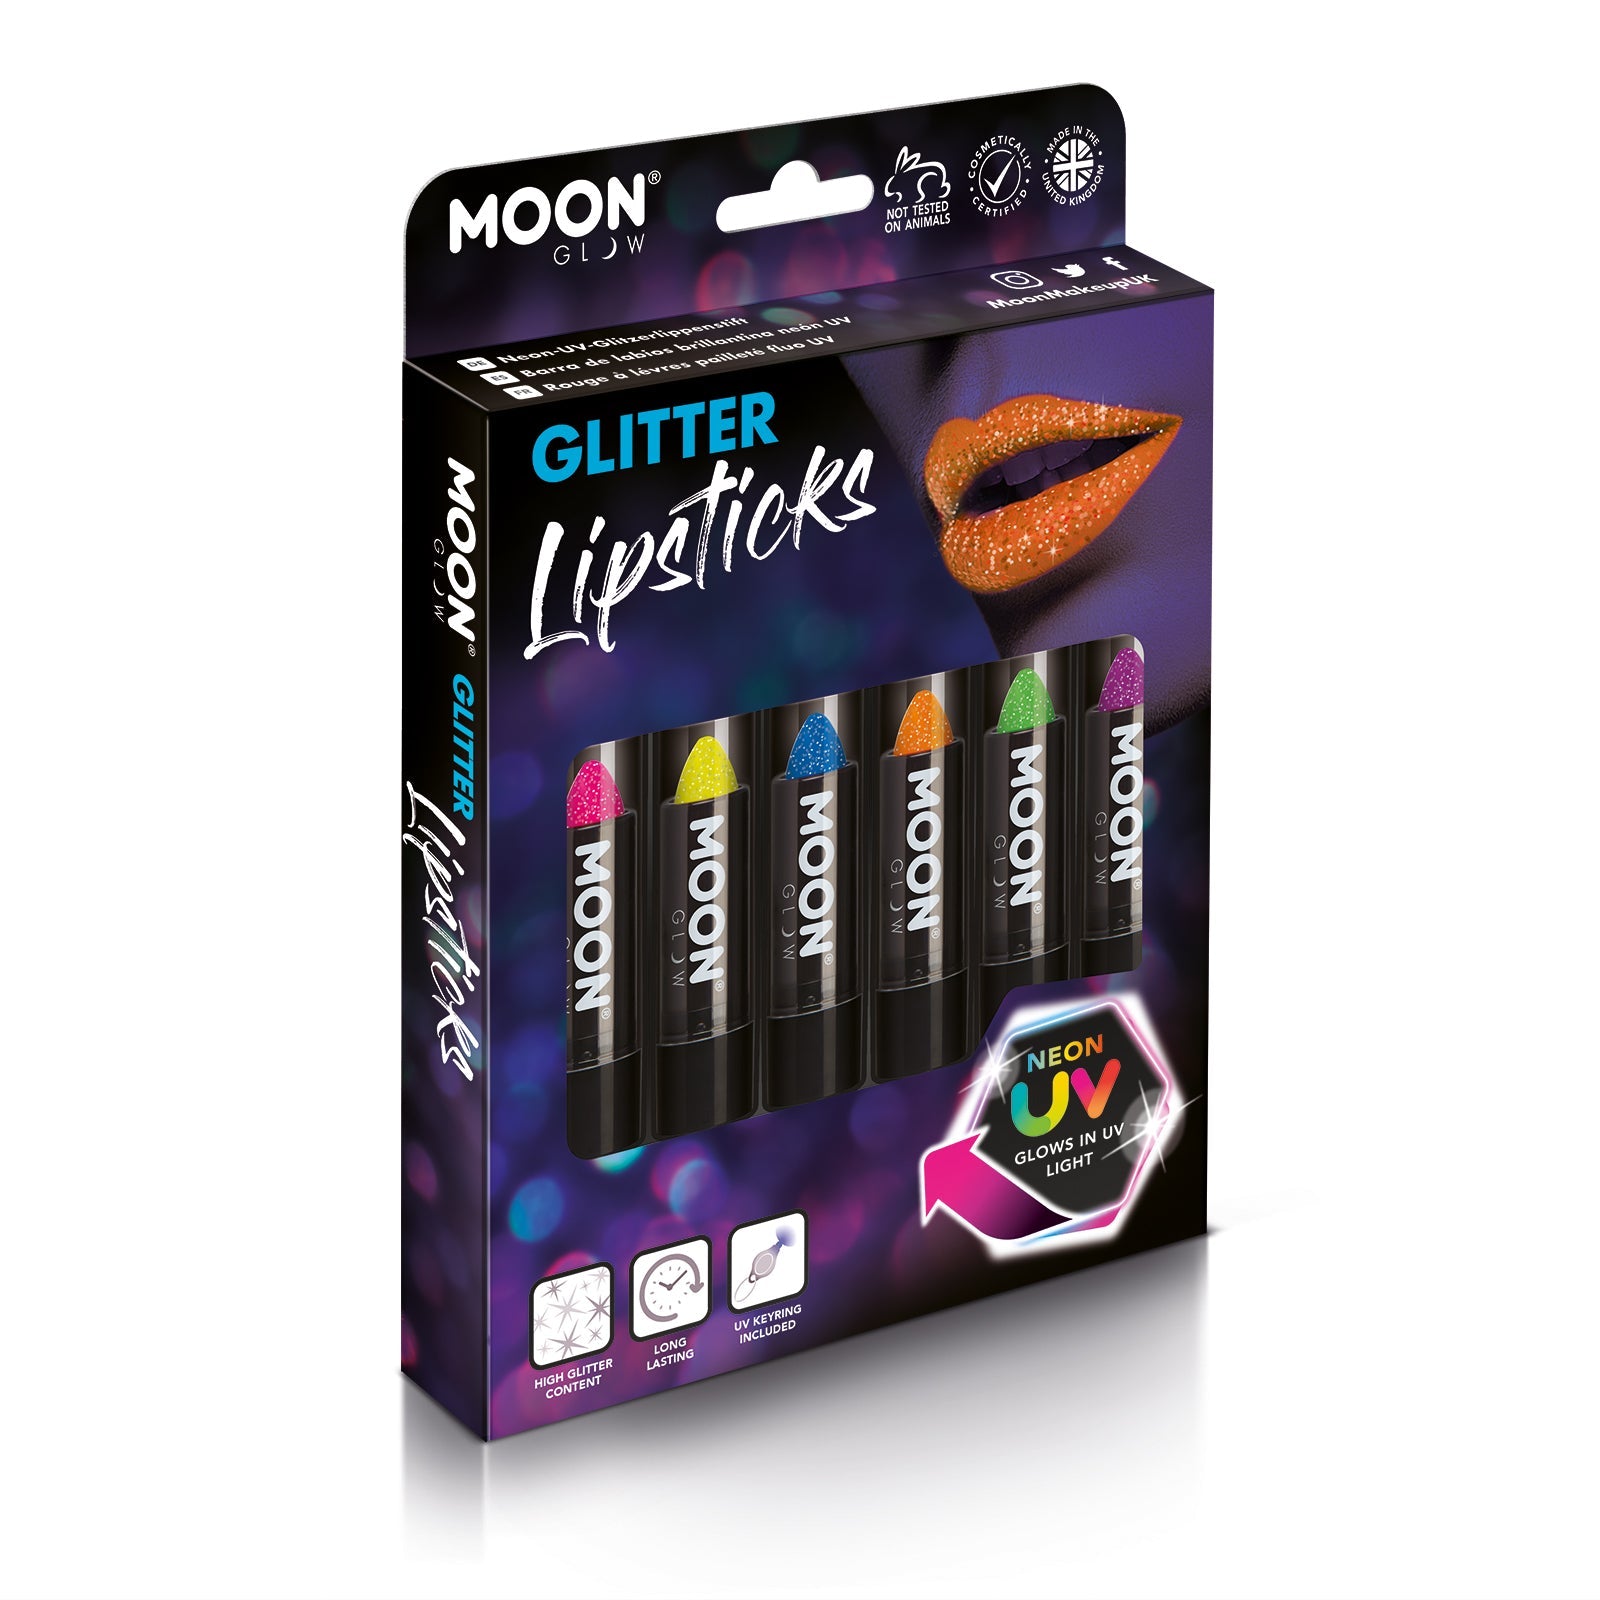 Neon UV Glow Blacklight Glitter Lipstick Boxset - 6 lipsticks, UV light. Cosmetically certified, FDA & Health Canada compliant and cruelty free.